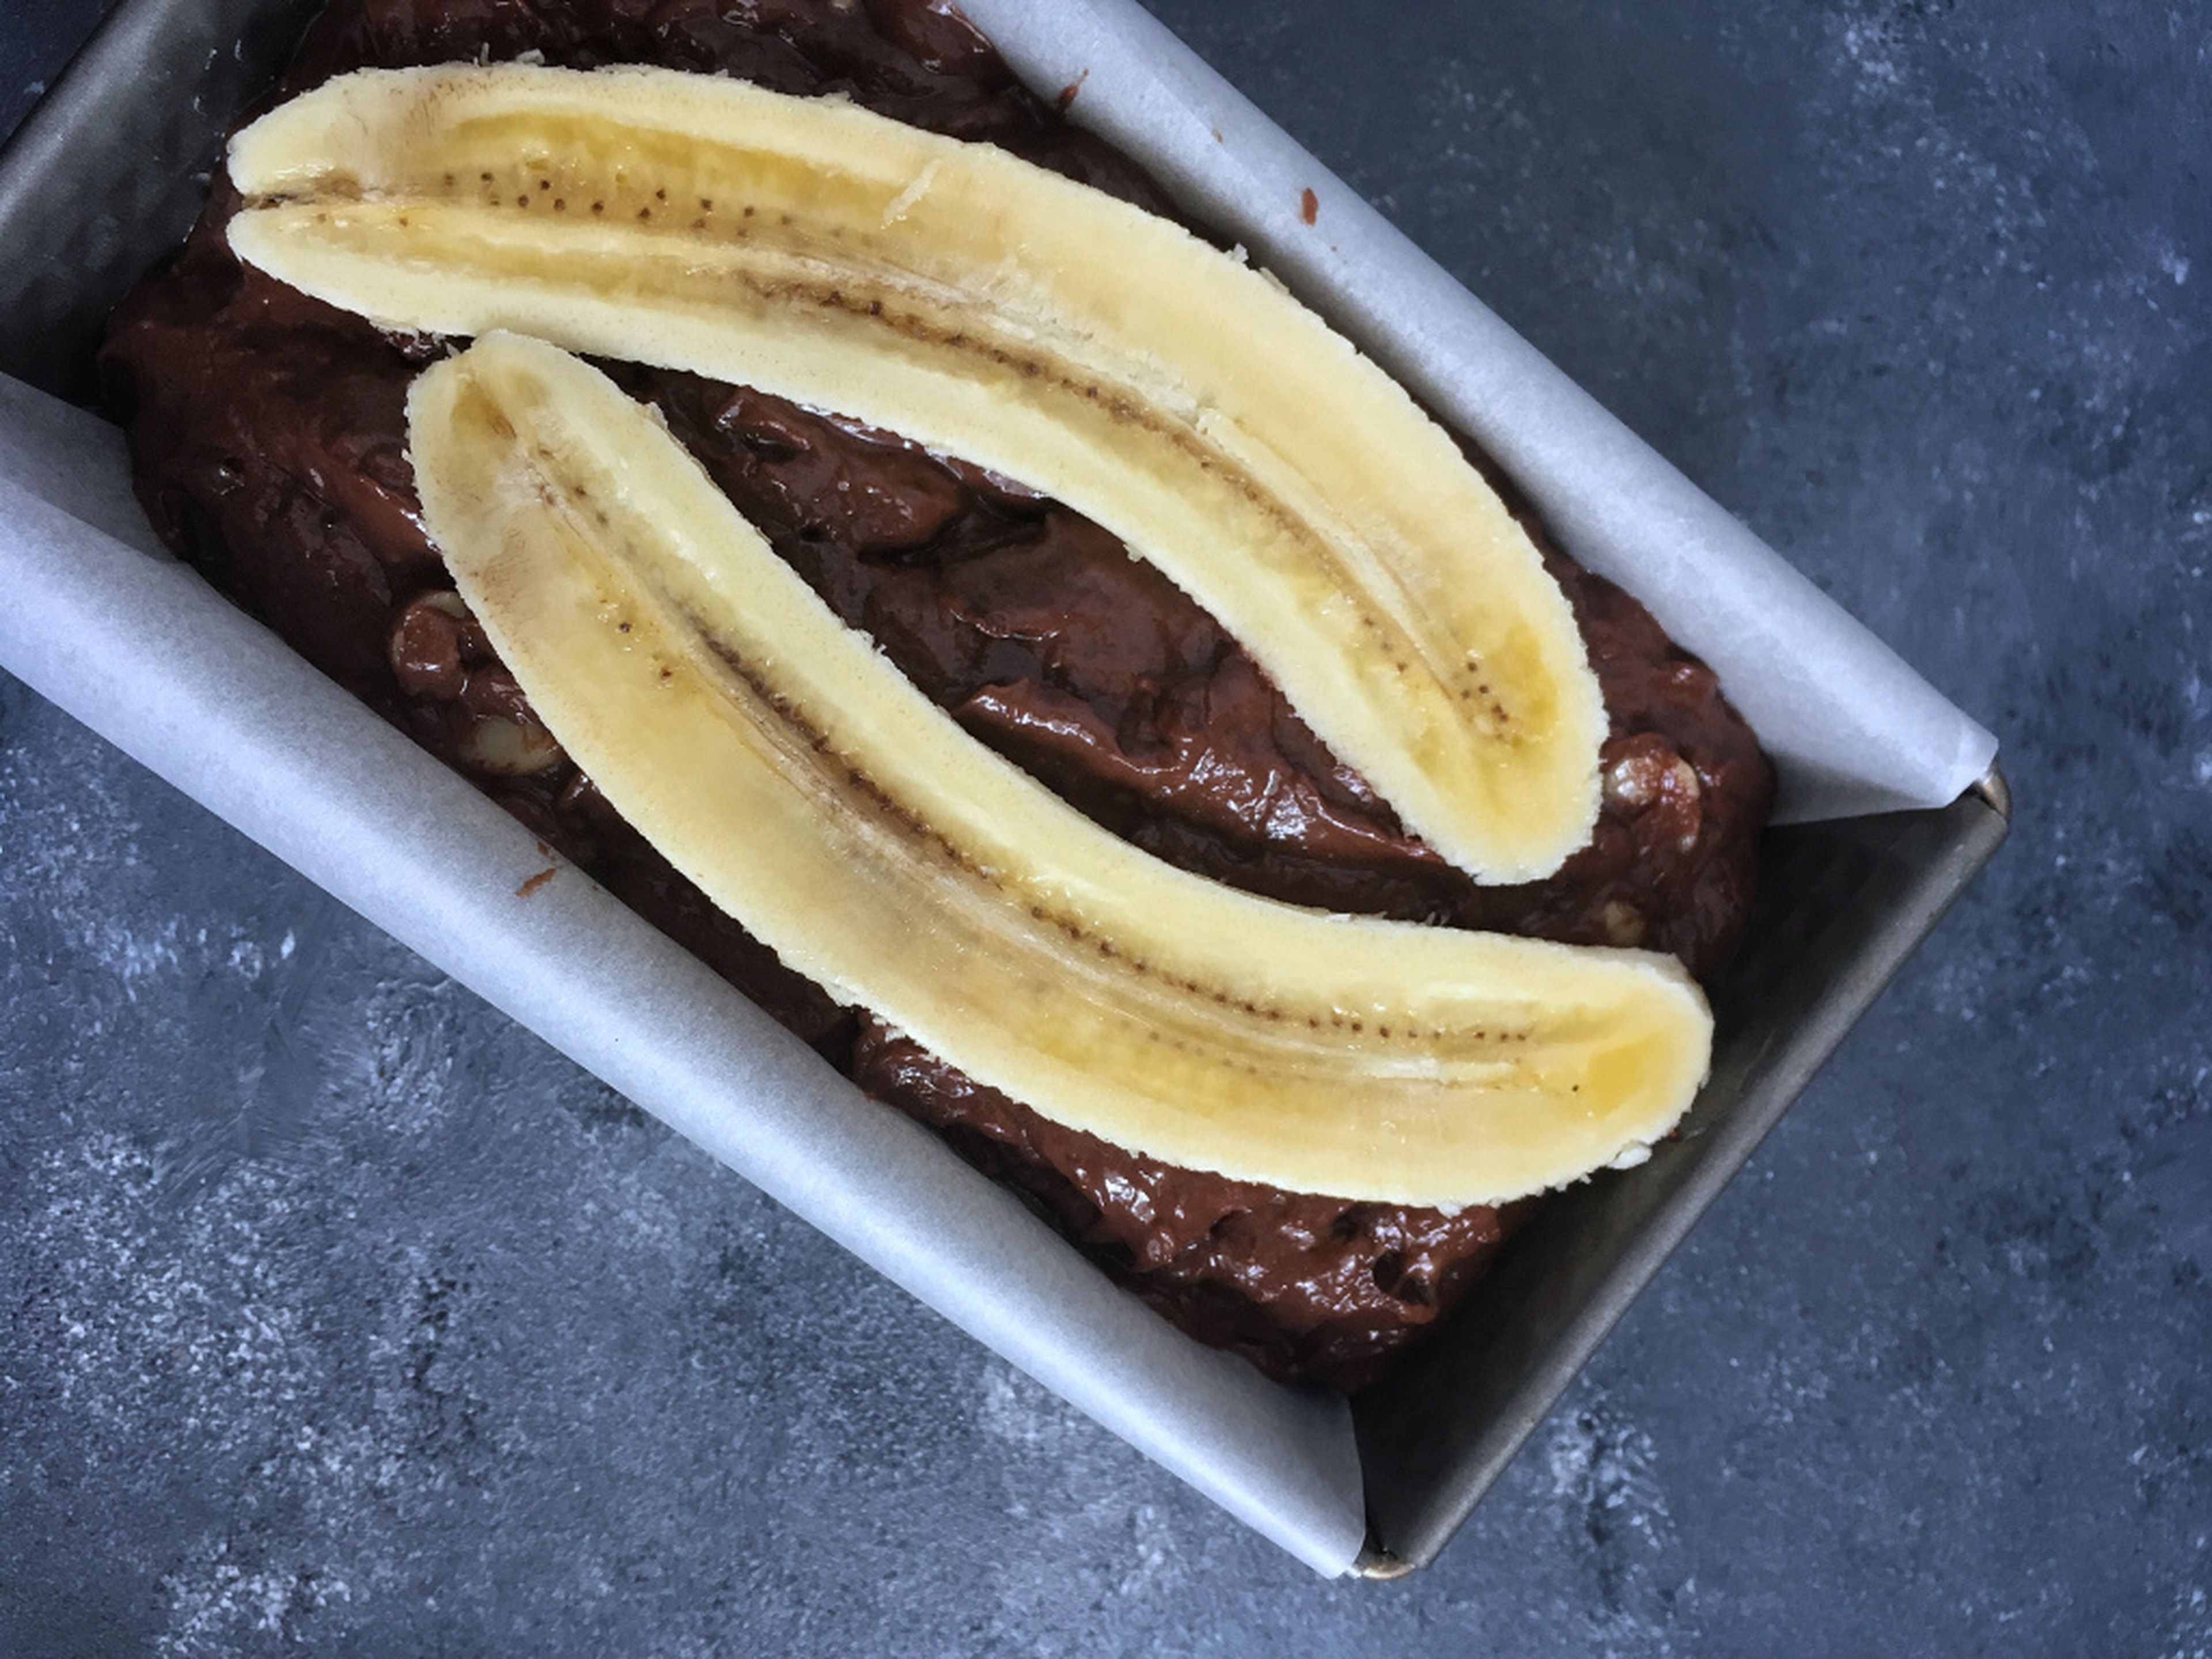 Den Schokoteig in die Form geben. Dann die übrige Banane der Länge nach halbieren und mit dem braunen Zucker bestreuen. So karamellisiert das beim Backen so schön.